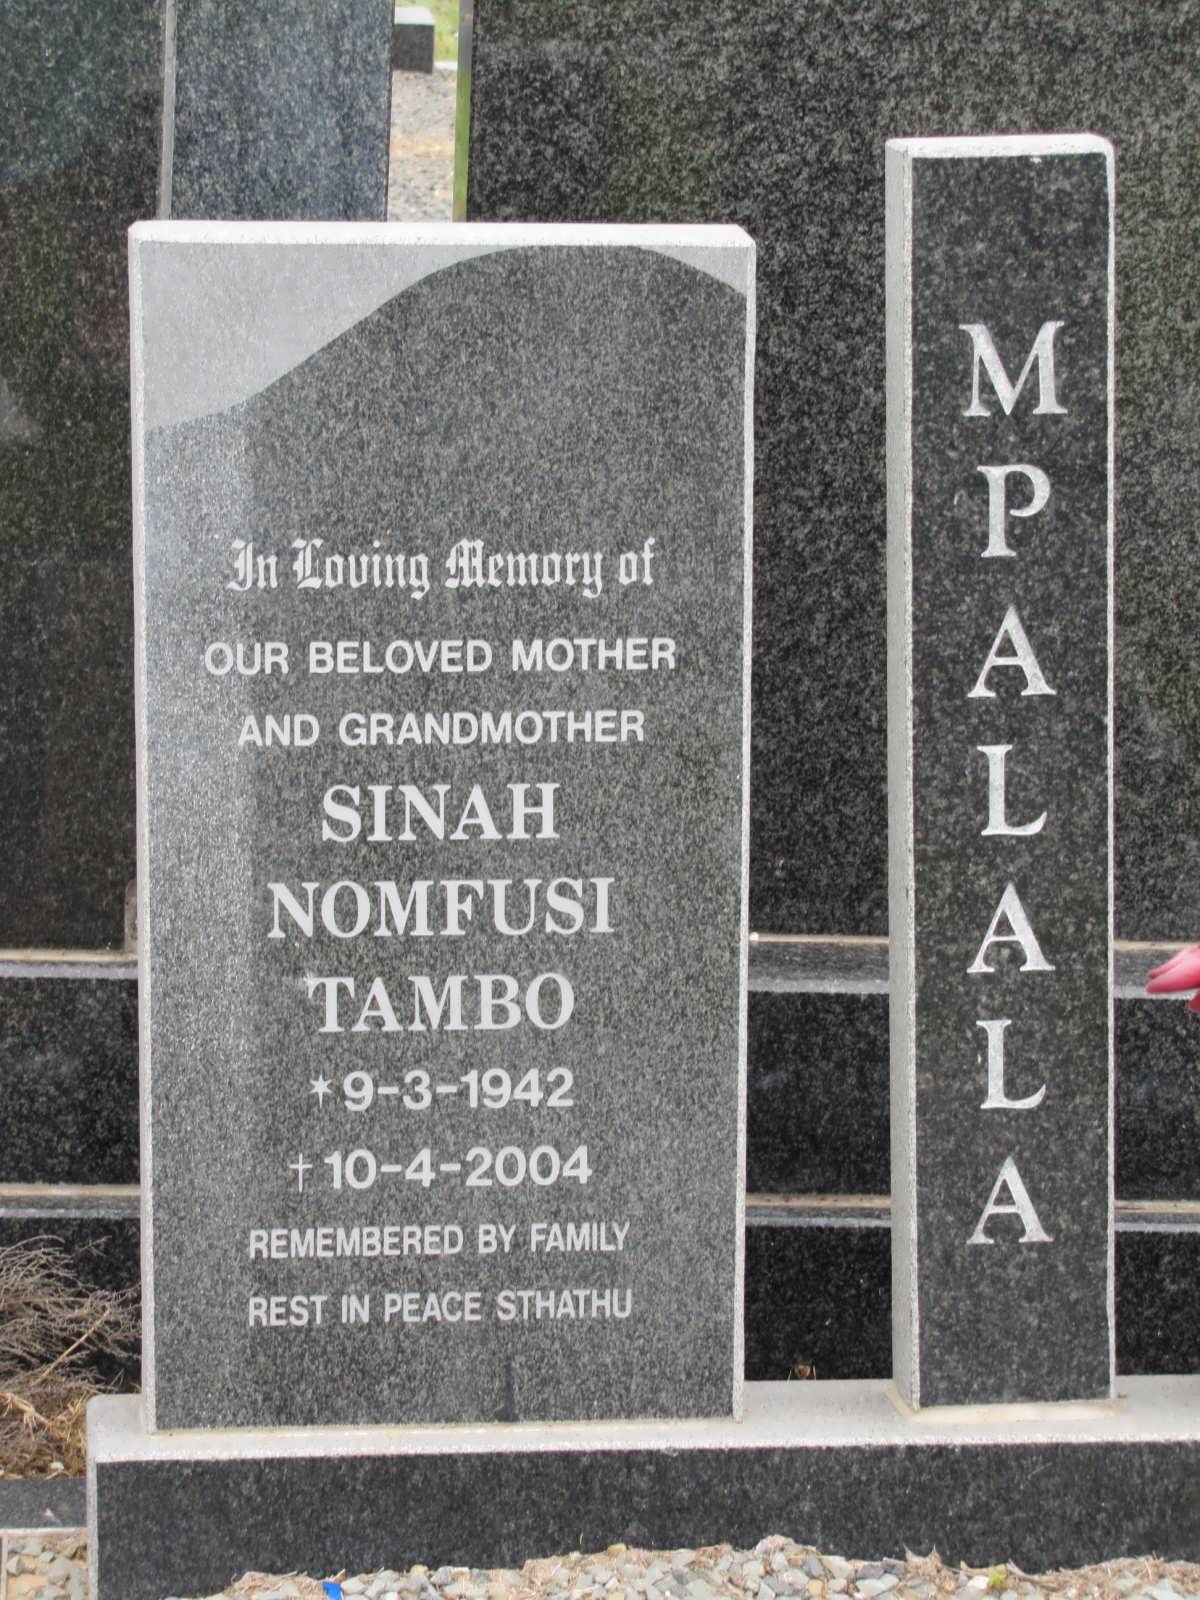 MPALALA Sinah Nomfusi Tambo 1942-2004